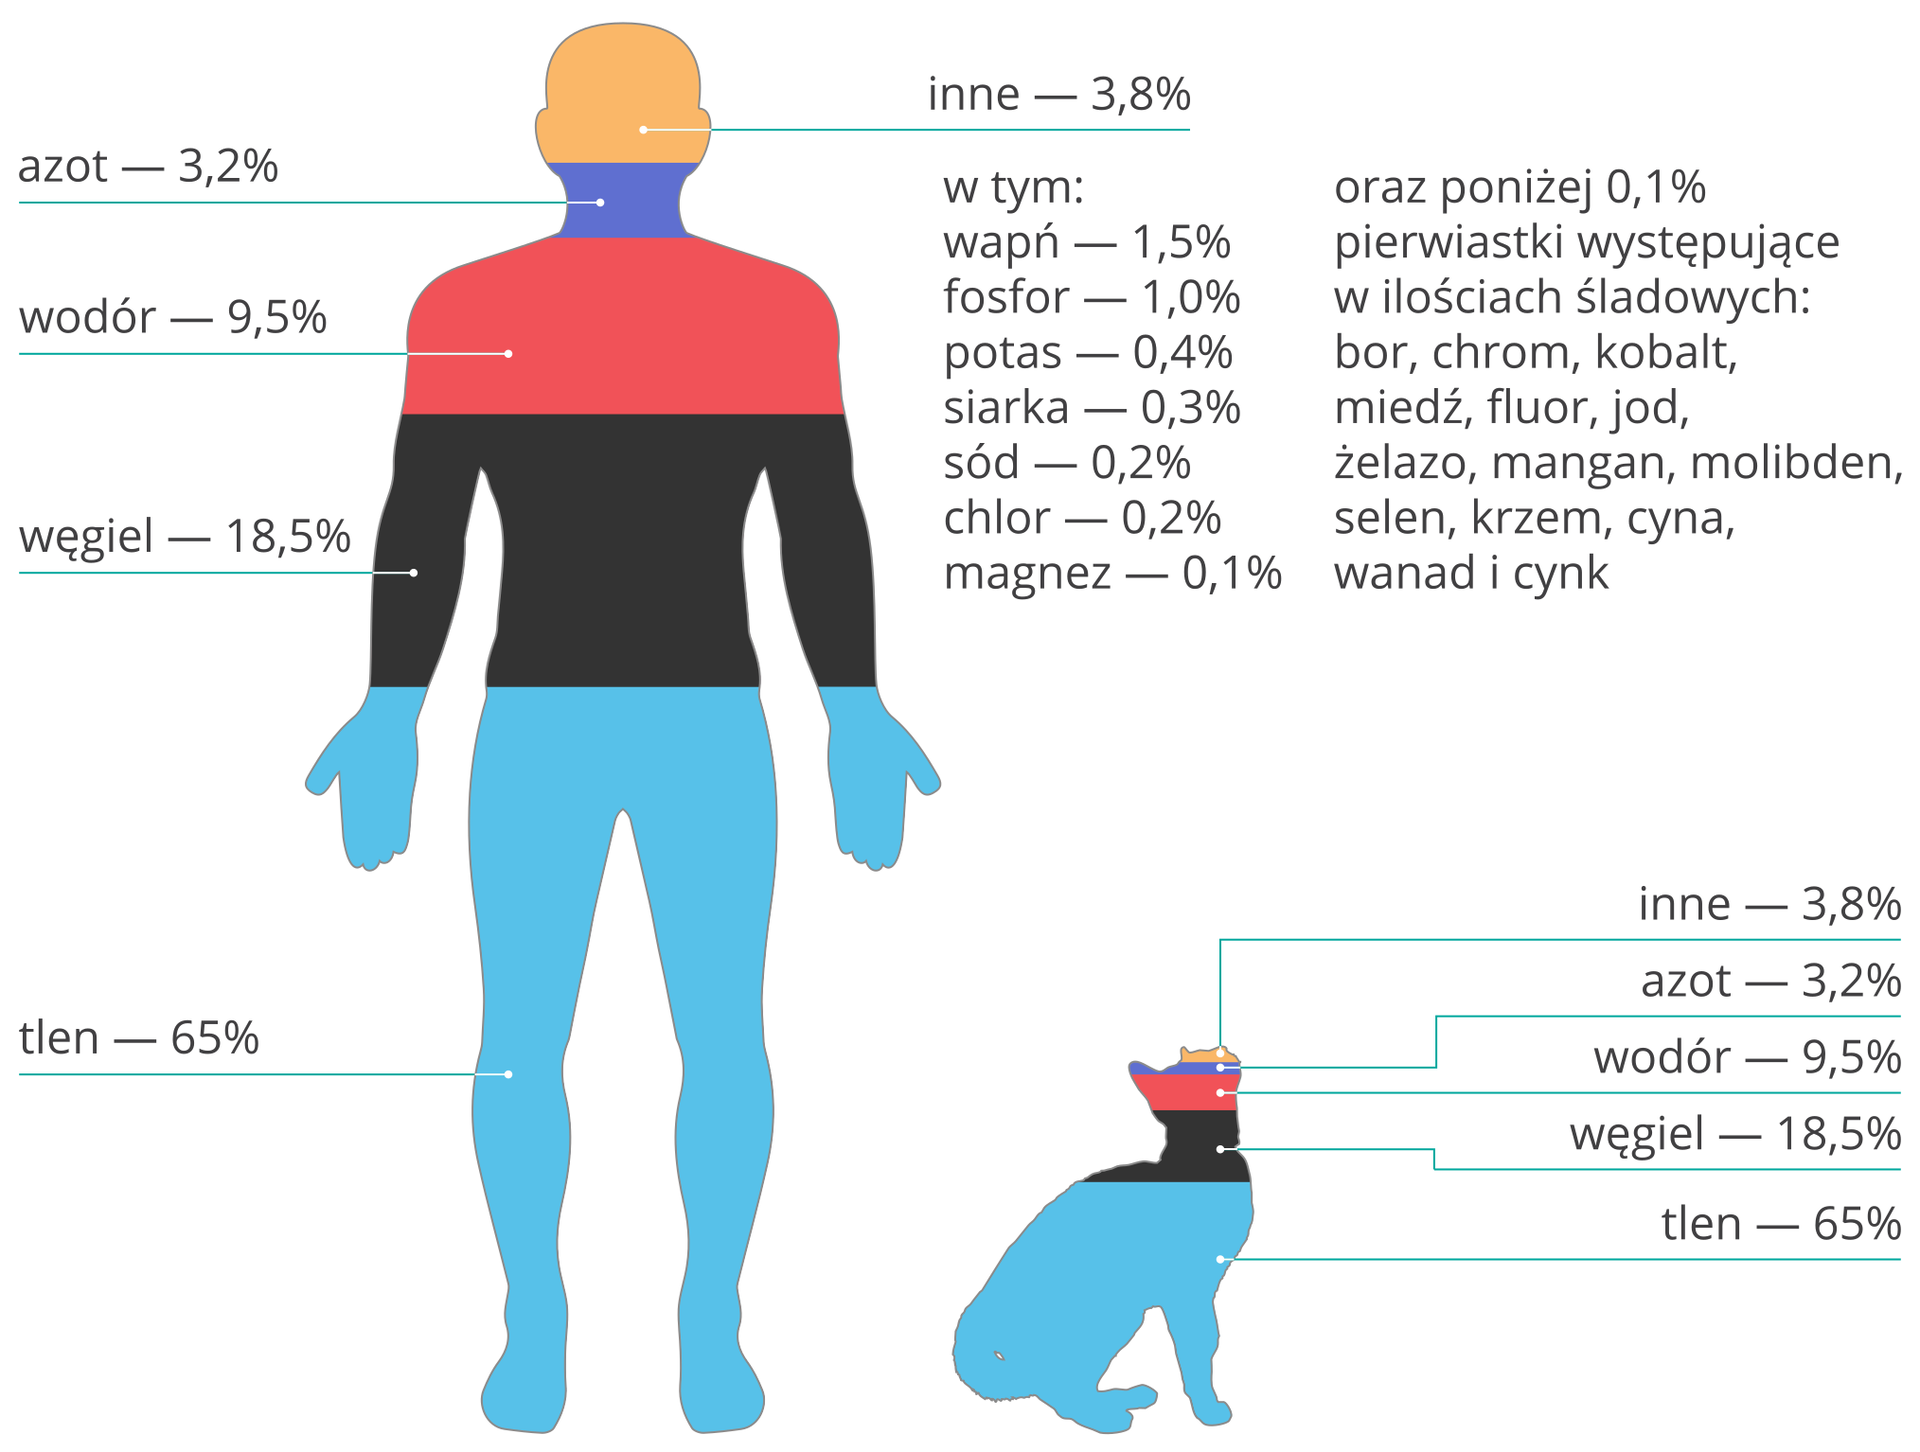 Ilustracja przedstawia sylwetki człowieka i kota podzielone na poziome różnobarwne obszary zgodnie z ustalonym rozkładem procentowym. Ilustruje ona procentową zawartość pierwiastków w organizmach ludzi i zwierząt. Wartości liczbowe są identyczne dla człowieka i kota. Licząc od dołu: tlen (pasek niebieski) 65 procent, węgiel (pasek czarny) 18,5 procent, wodór (pasek czerwony) 9,5 procent, azot (pasek granatowy) 3,2 procent, inne (pasek pomarańczowy) 3,8 procent . Obok rysunków znajduje się lista pierwiastków wchodzących w skład grupy inne: wapń 1,5 procent, fosfor 1 procent, potas 0,4 procent, siarka 0,3 procent, sód 0,2 procent, chlor 0,2 procent, magnez 0,1 procent oraz poniżej 0,1 procent pierwiastki śladowe: bor, chrom, kobalt, miedź, fluor, jod, żelazo, mangan, molibden, selen, krzem, cyna, wanad i cynk.